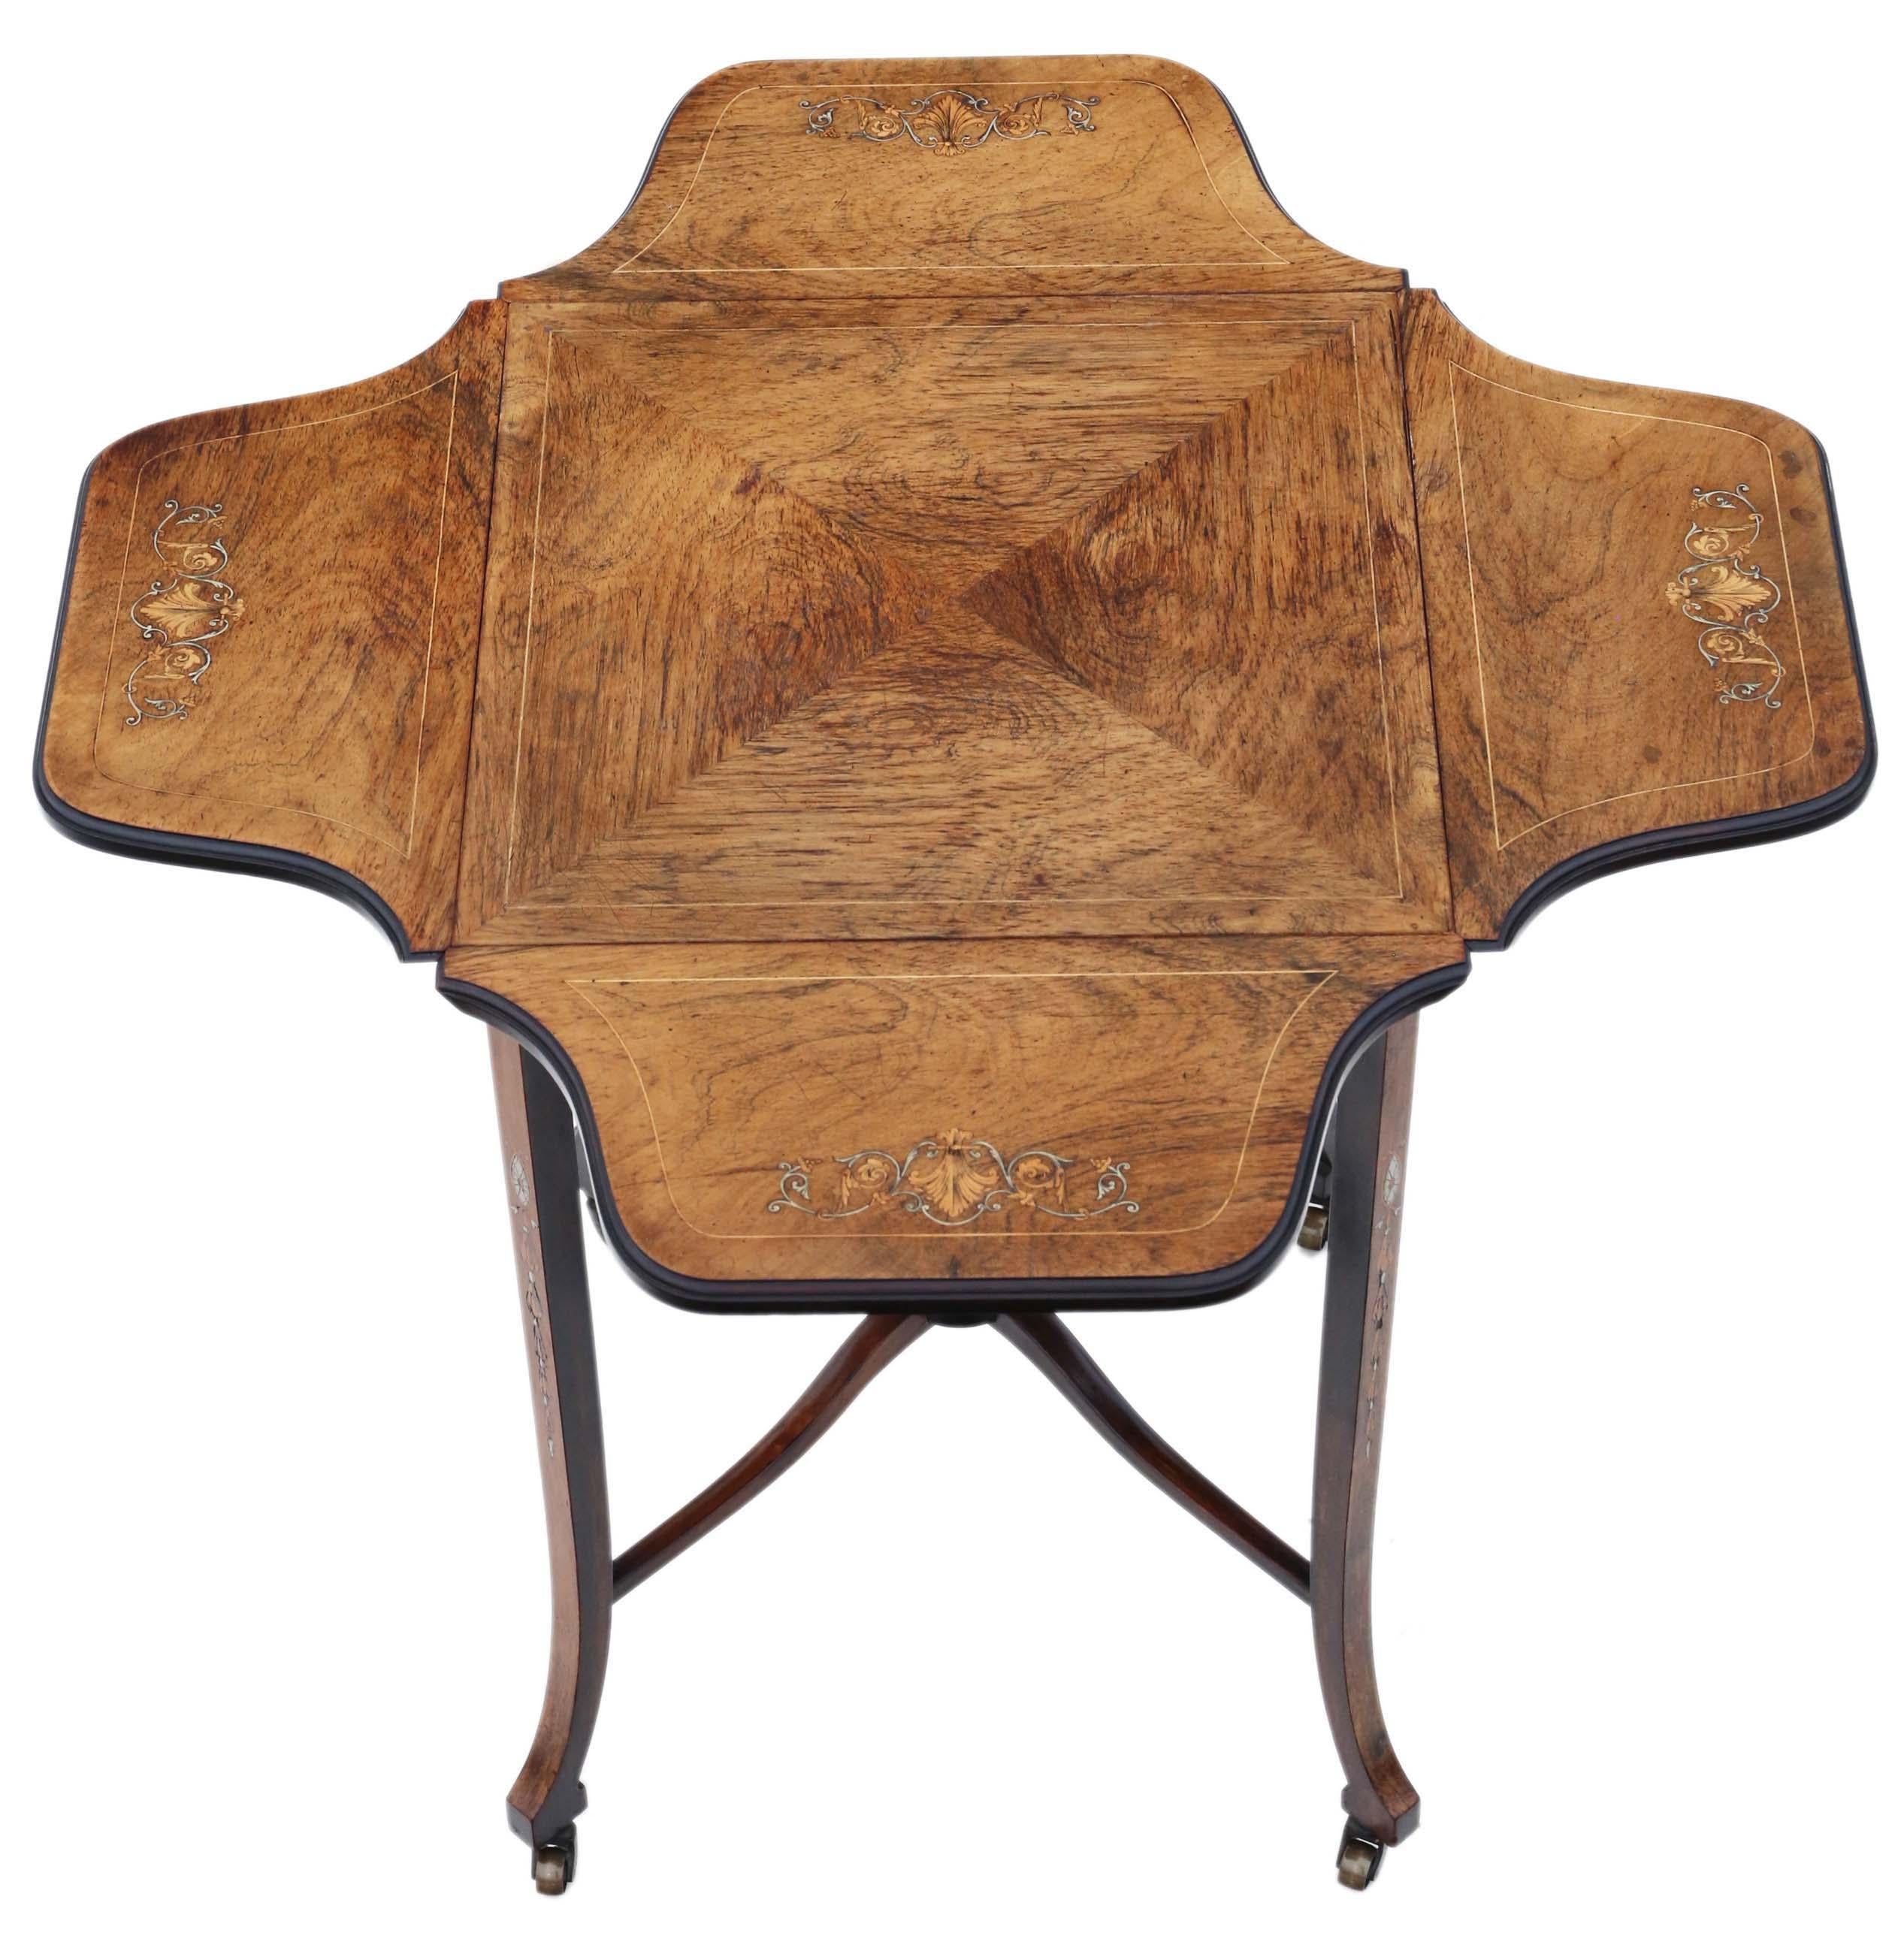 Antike feine Qualität C1900 Faltung Intarsien Mitte Seite Beistelltisch geformt.

Dies ist ein wunderschöner Tisch von höchster Qualität, der voller Alter, Charme und Charakter ist.

Seltener und attraktiver antiker Qualitätsfund.

Der Tisch